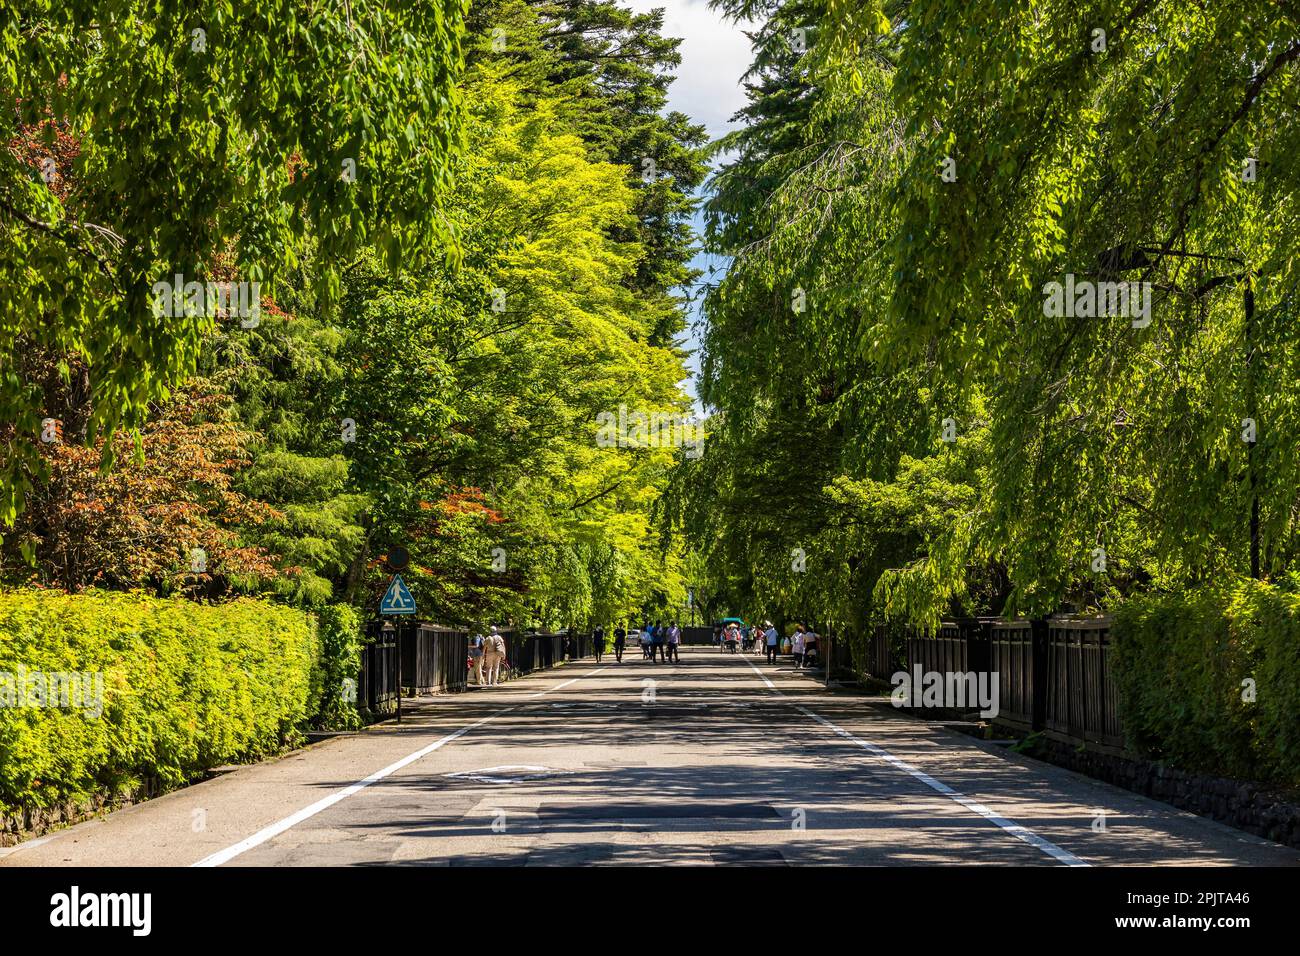 Rue de résidence samouraï, avec feuilles vertes d'été, ville historique de Kakudate (kakunodate), ville de Senboku, Akita, Tohoku, Japon, Asie de l'est, Asie Banque D'Images